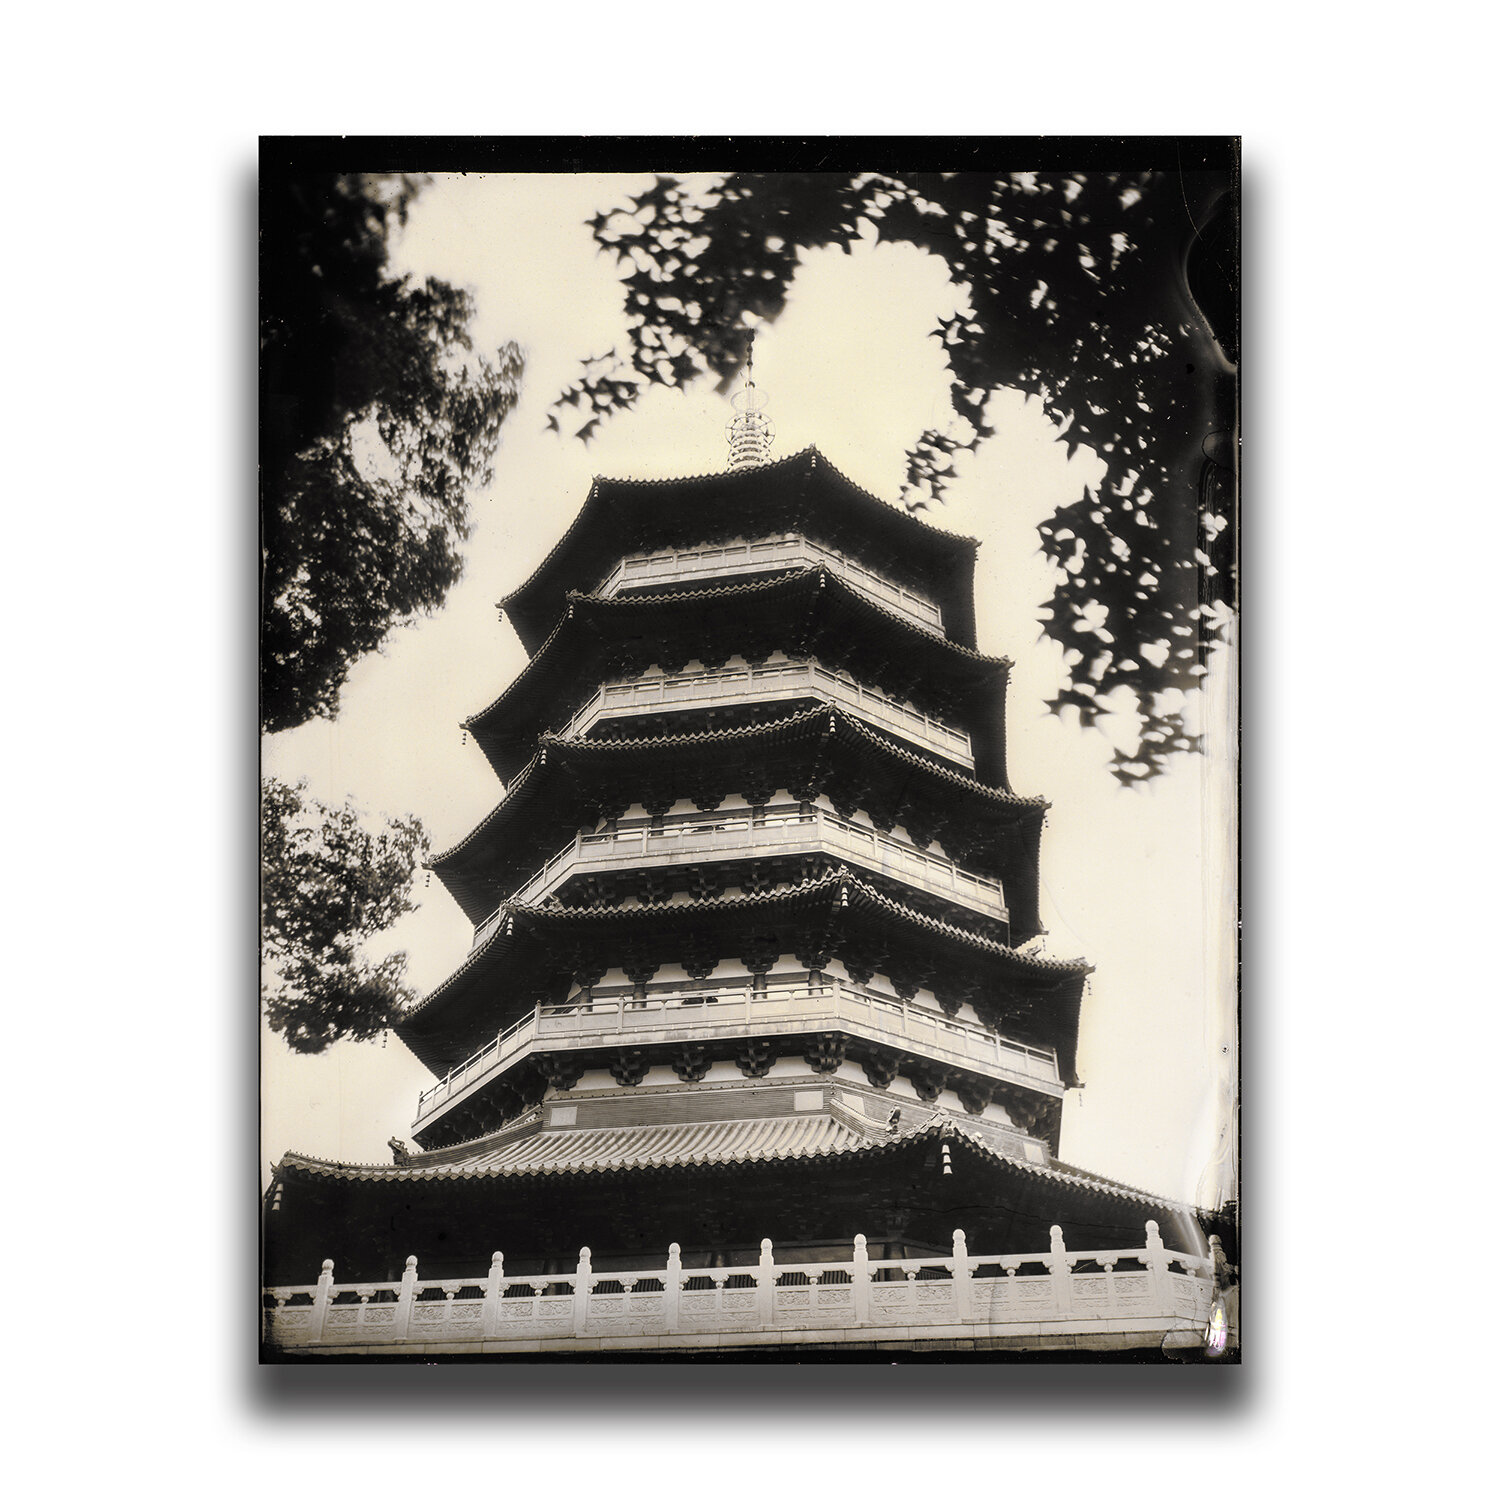 Hangzhou・Leifeng Pagoda/杭州・雷峰塔/항저우・뇌봉탑/杭州・雷峰塔